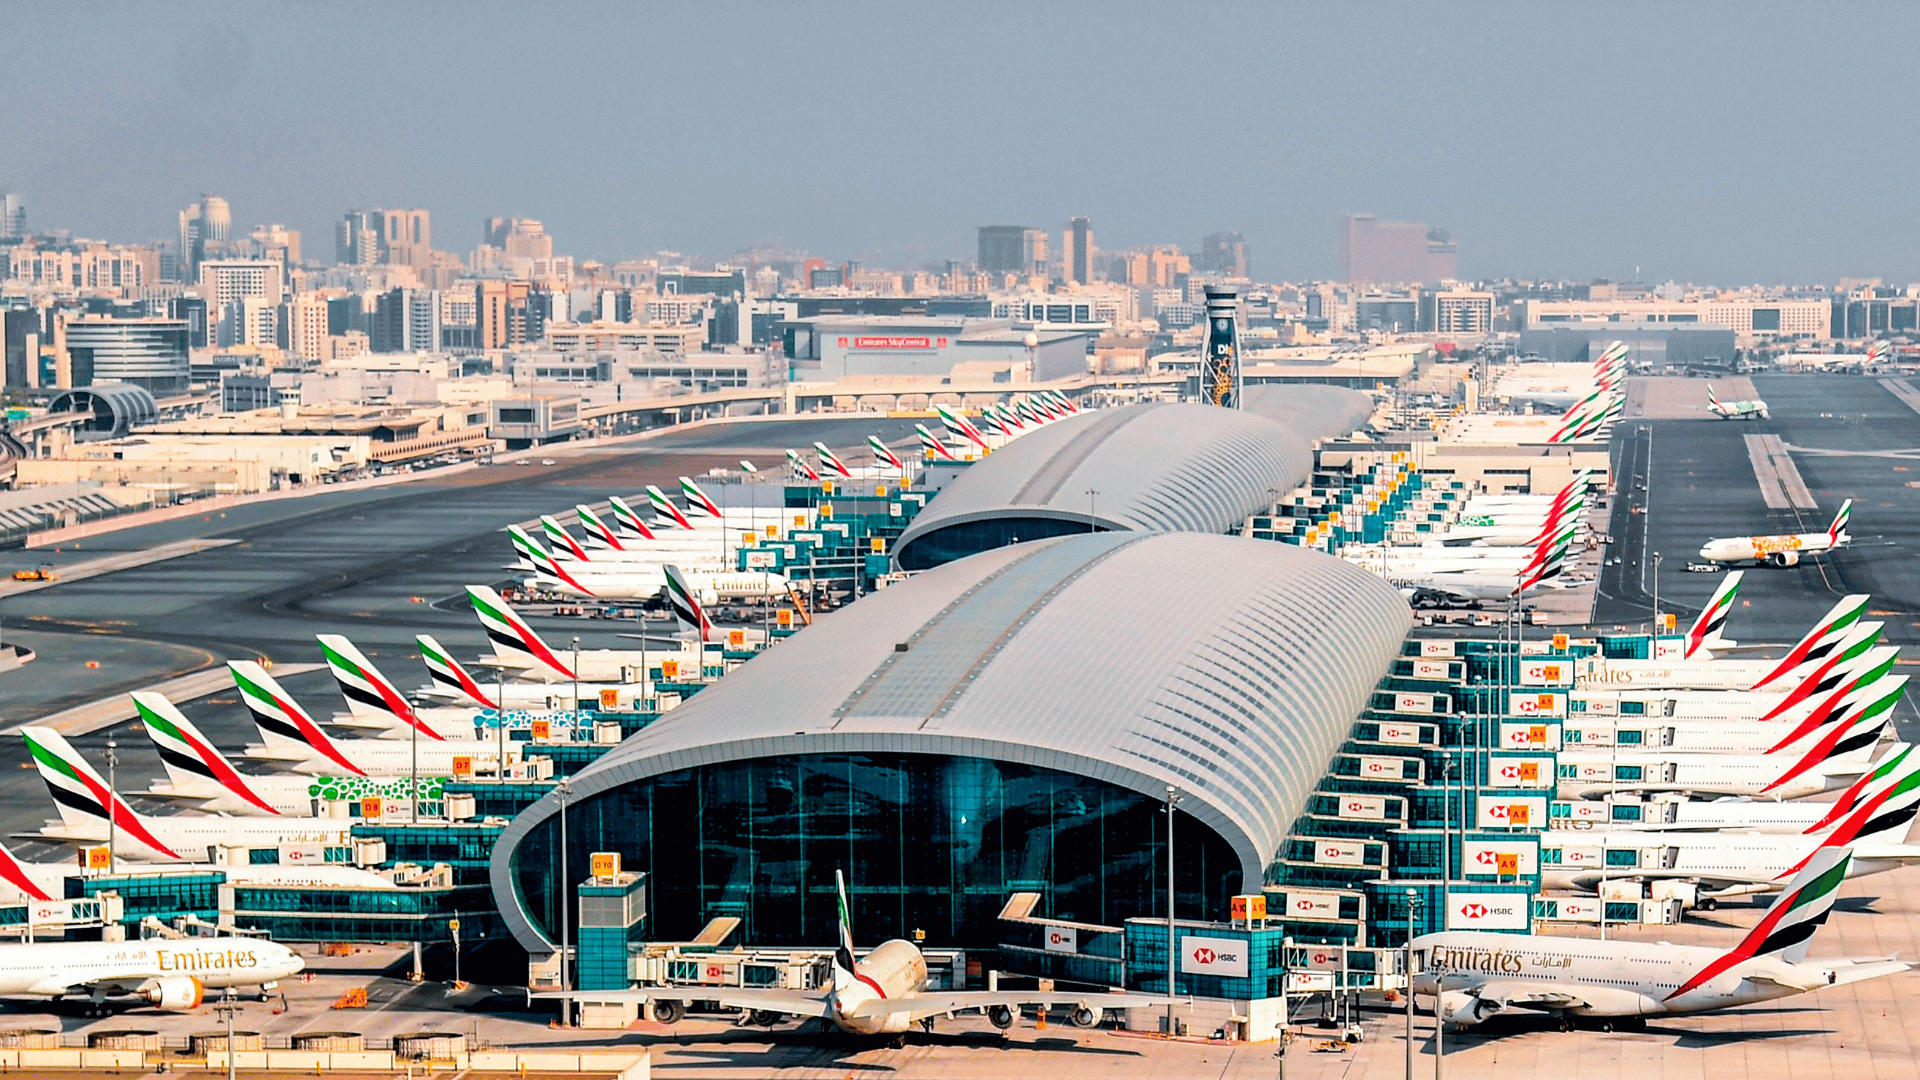 Дубайский аэропорт. Международный аэропорт Дубай. Аэропорт Дубай (Dubai International Airport). Аэропорт в ОАЭ DXB. Дубай Интернешнл аэропорт.